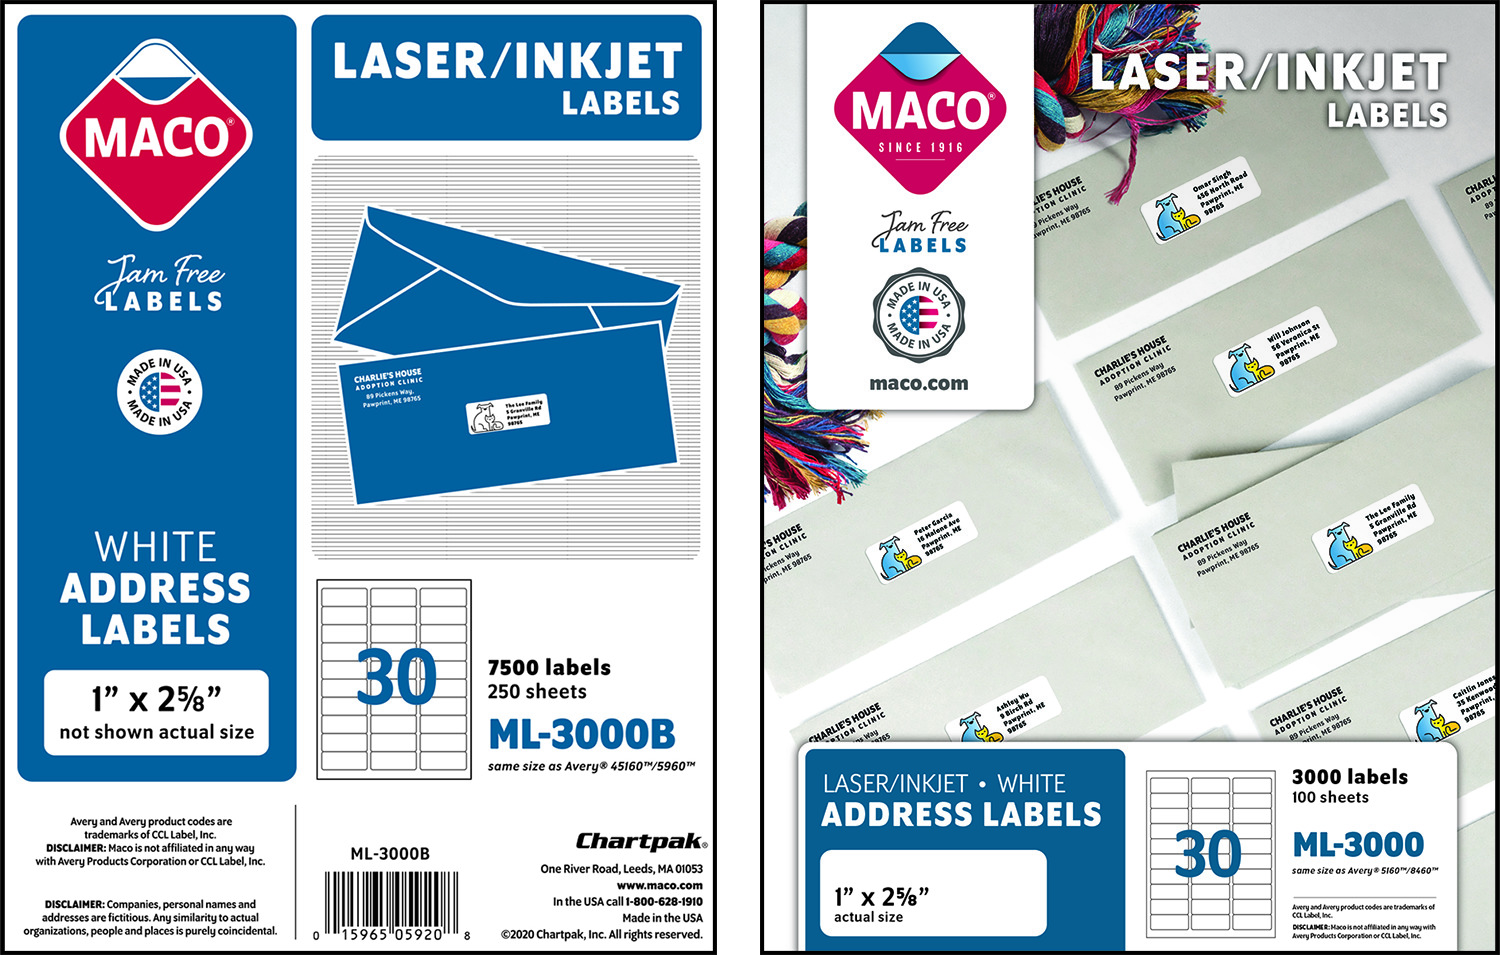 Maco Laser And Inkjet Labels Bender Burkot